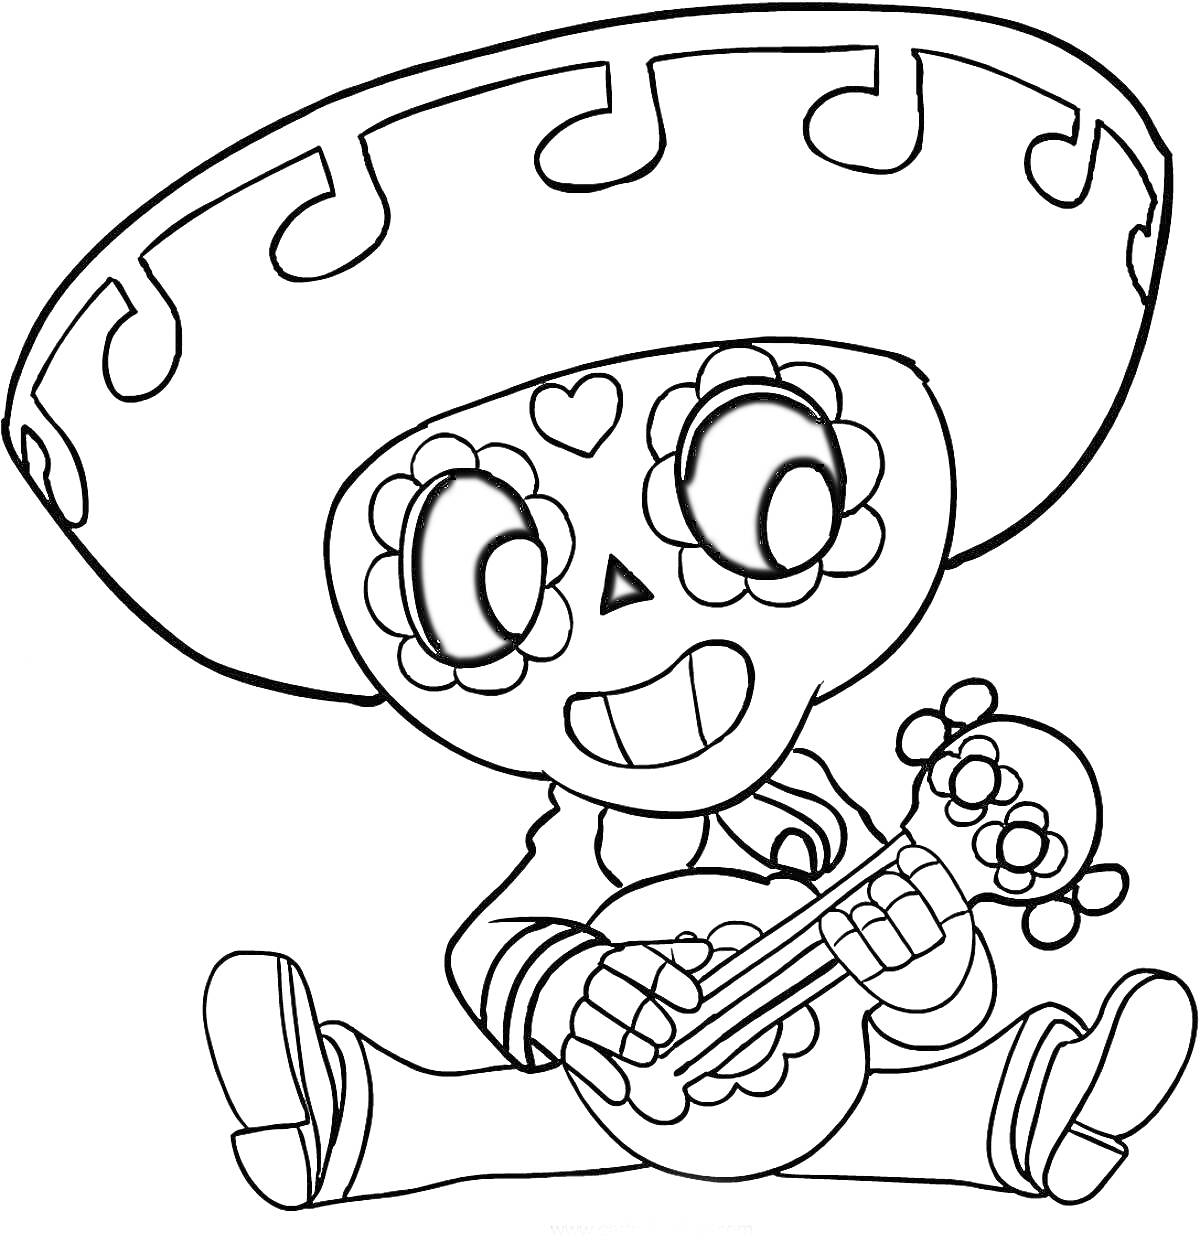 Раскраска Персонаж с сомбреро и гитарой из Браво Старс, сидящий на полу